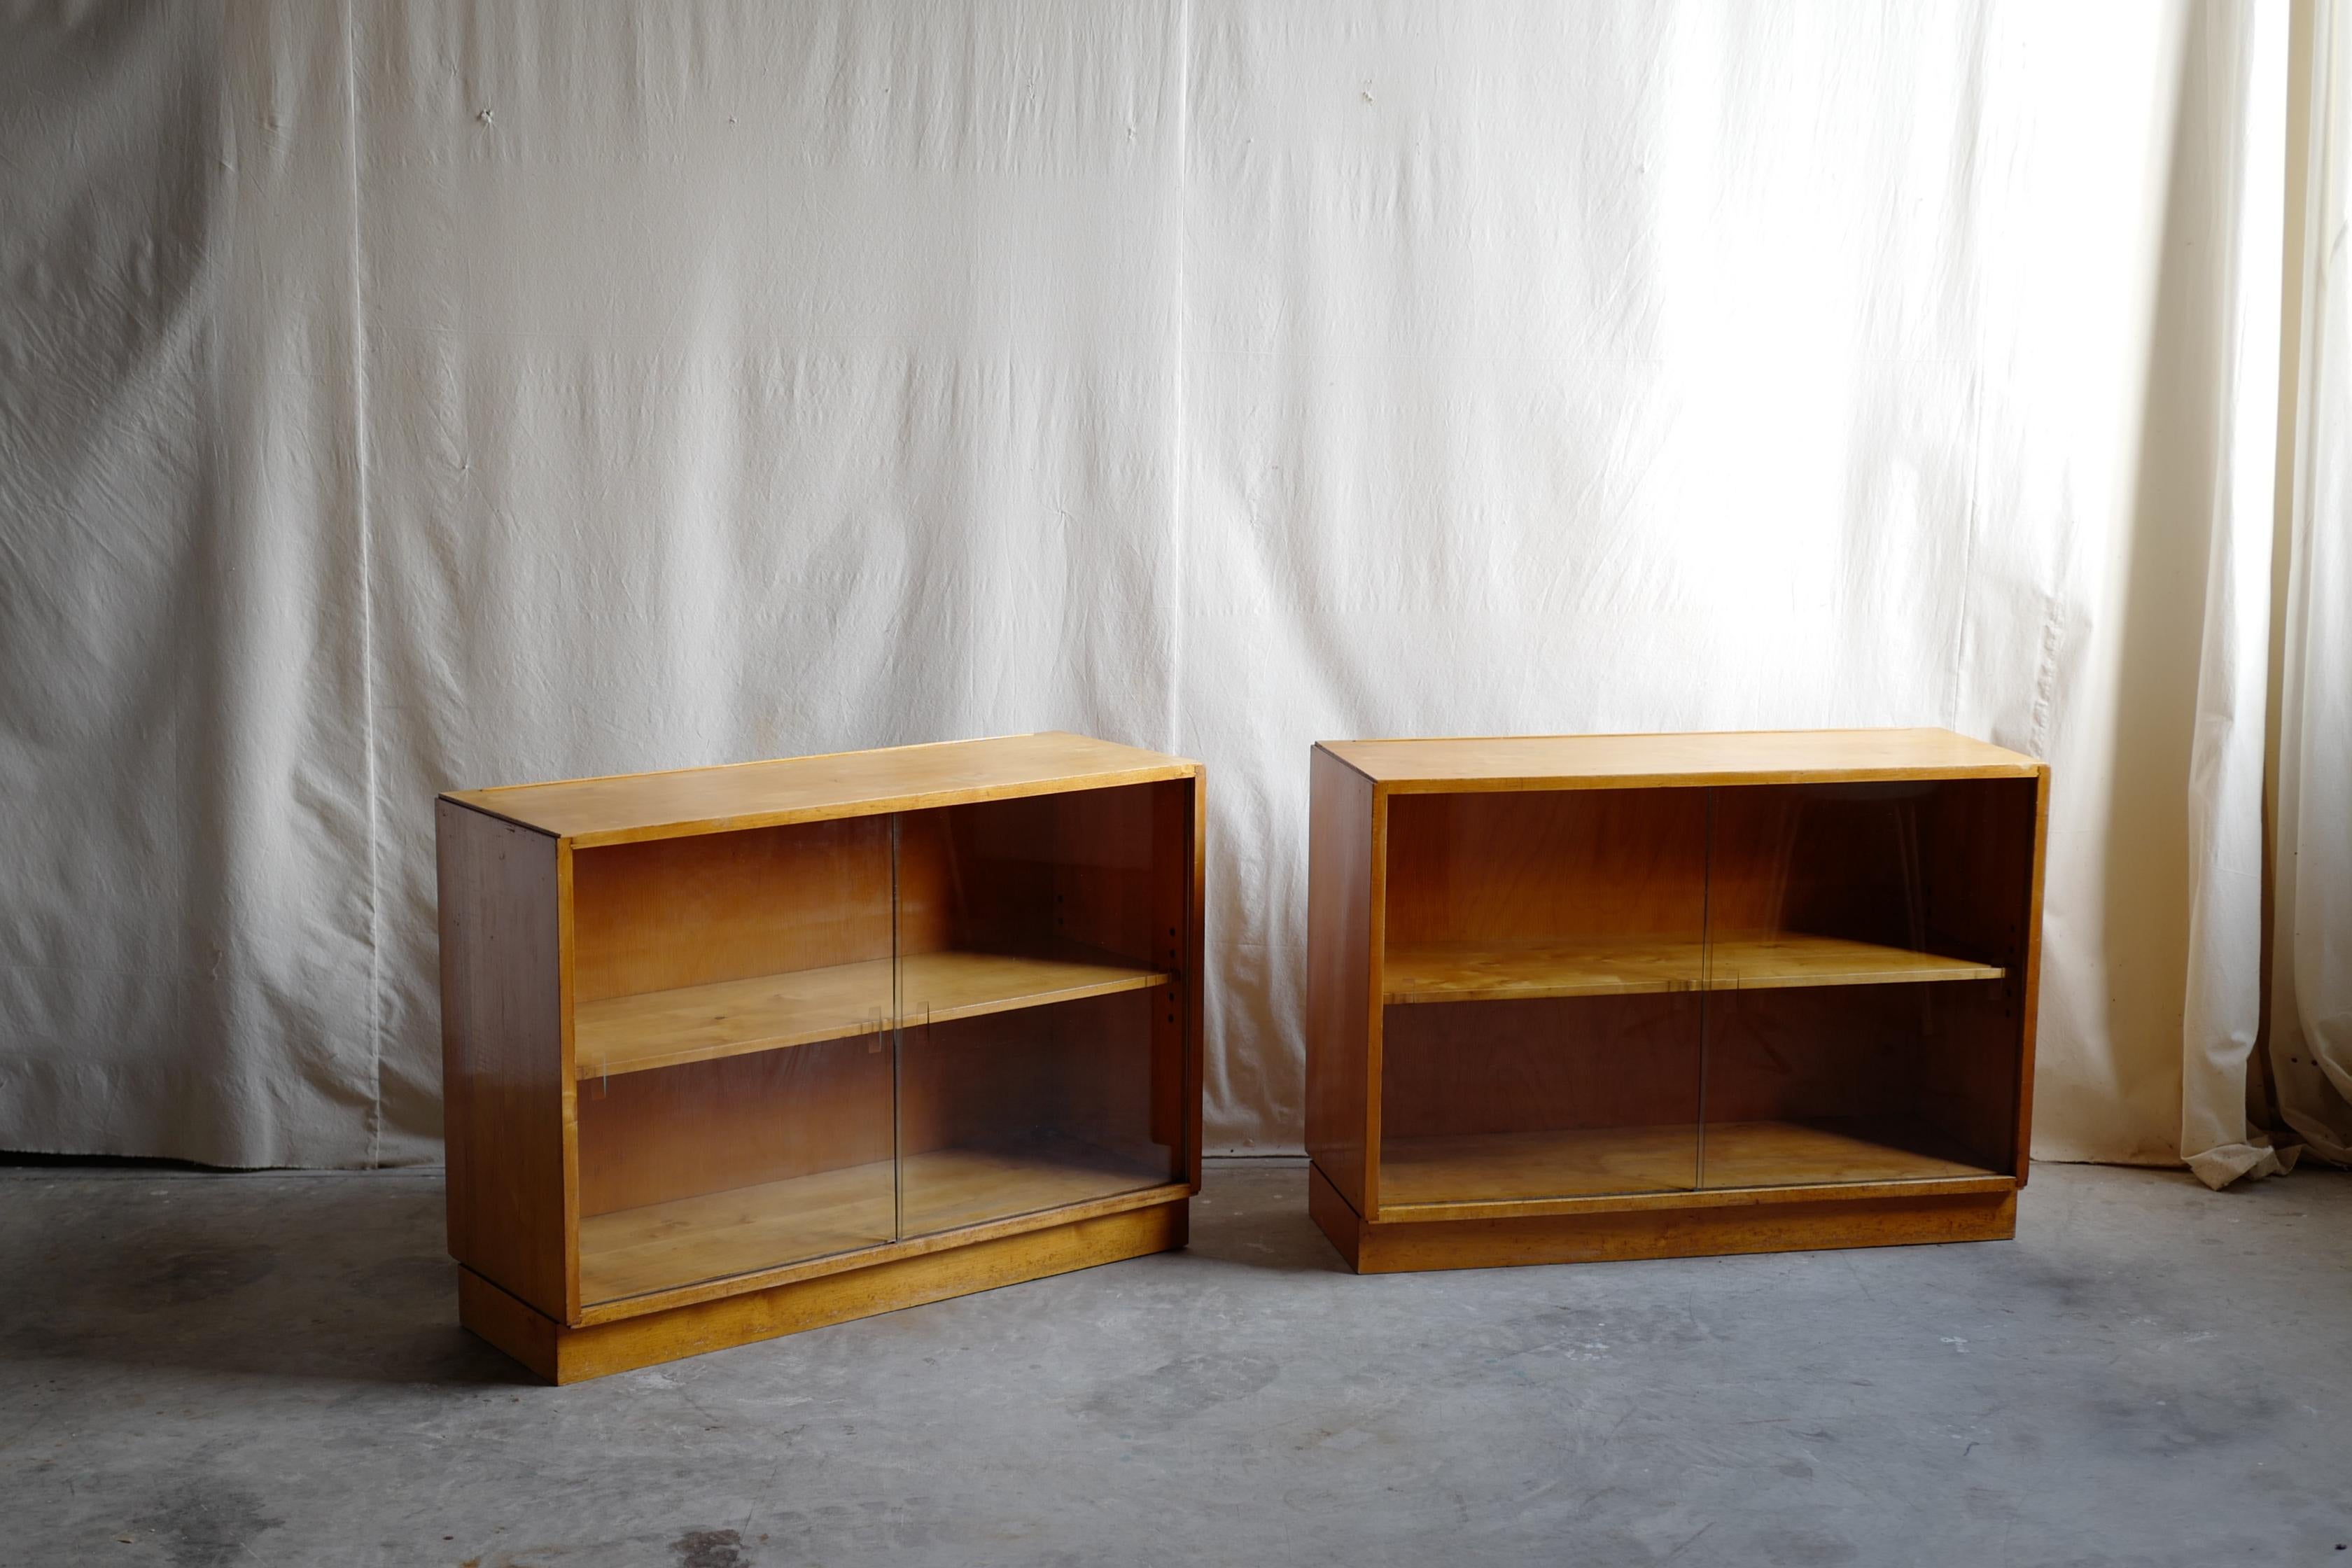 alvar & aino aalto design glasvitrine.
Dies sind die frühesten Produkte von Aalto-Möbeln.
alvar & aino versuchen, ihre Möbel im Vereinigten Königreich als Finmar zu verkaufen.
Dies ist also der Originalzustand. 
Der Modernismus macht unsere Welt aus